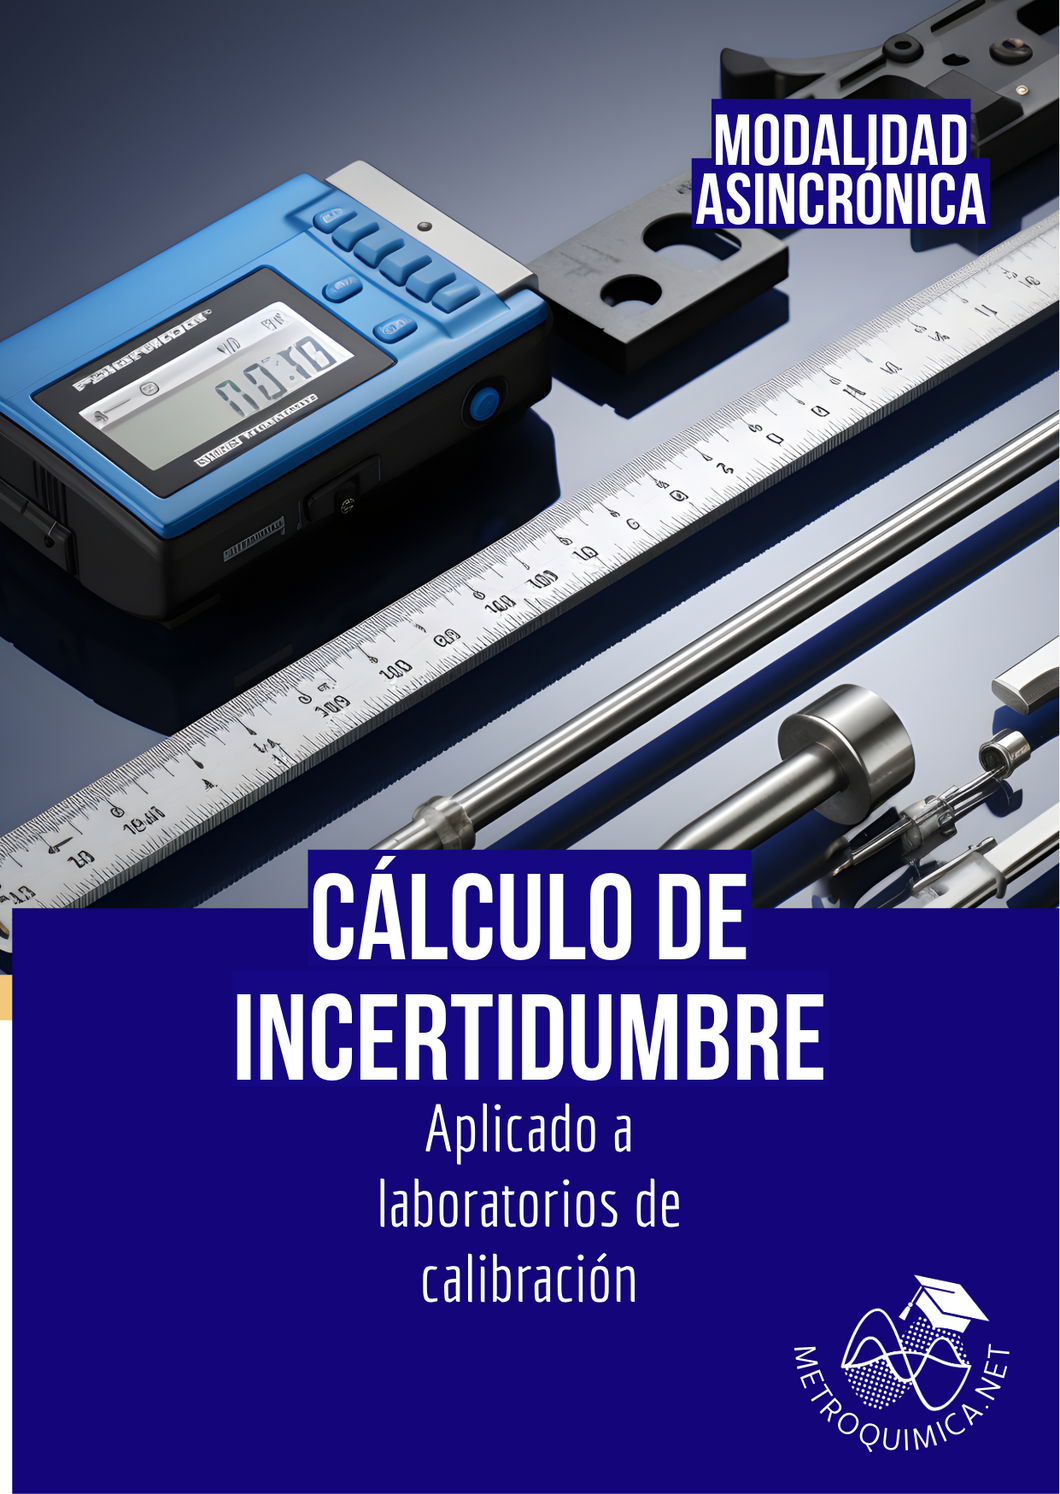 Cálculo de la Incertidumbre aplicado a Laboratorios de Calibración